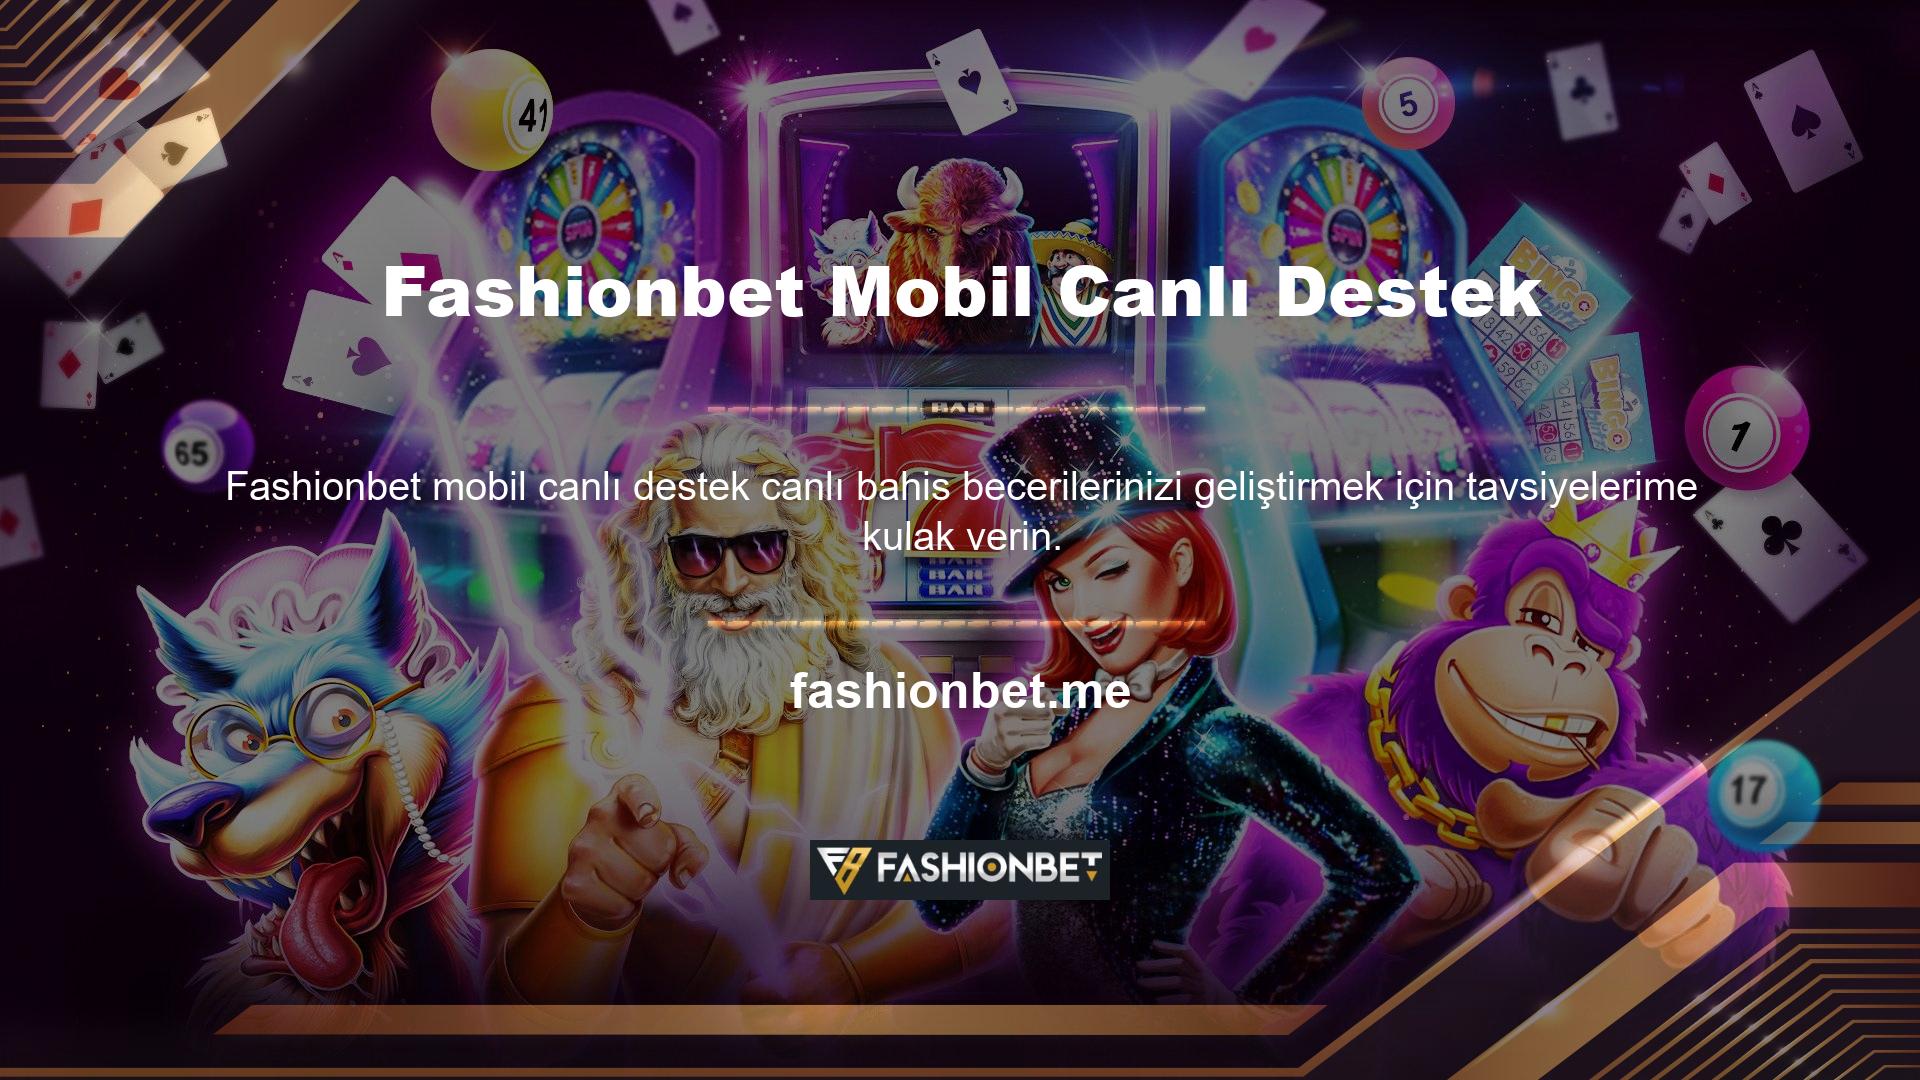 Söylediklerimi dinlesen iyi olur, yoksa Fashionbet web sitesi gerçek zamanlı oyun seçenekleri sunuyor